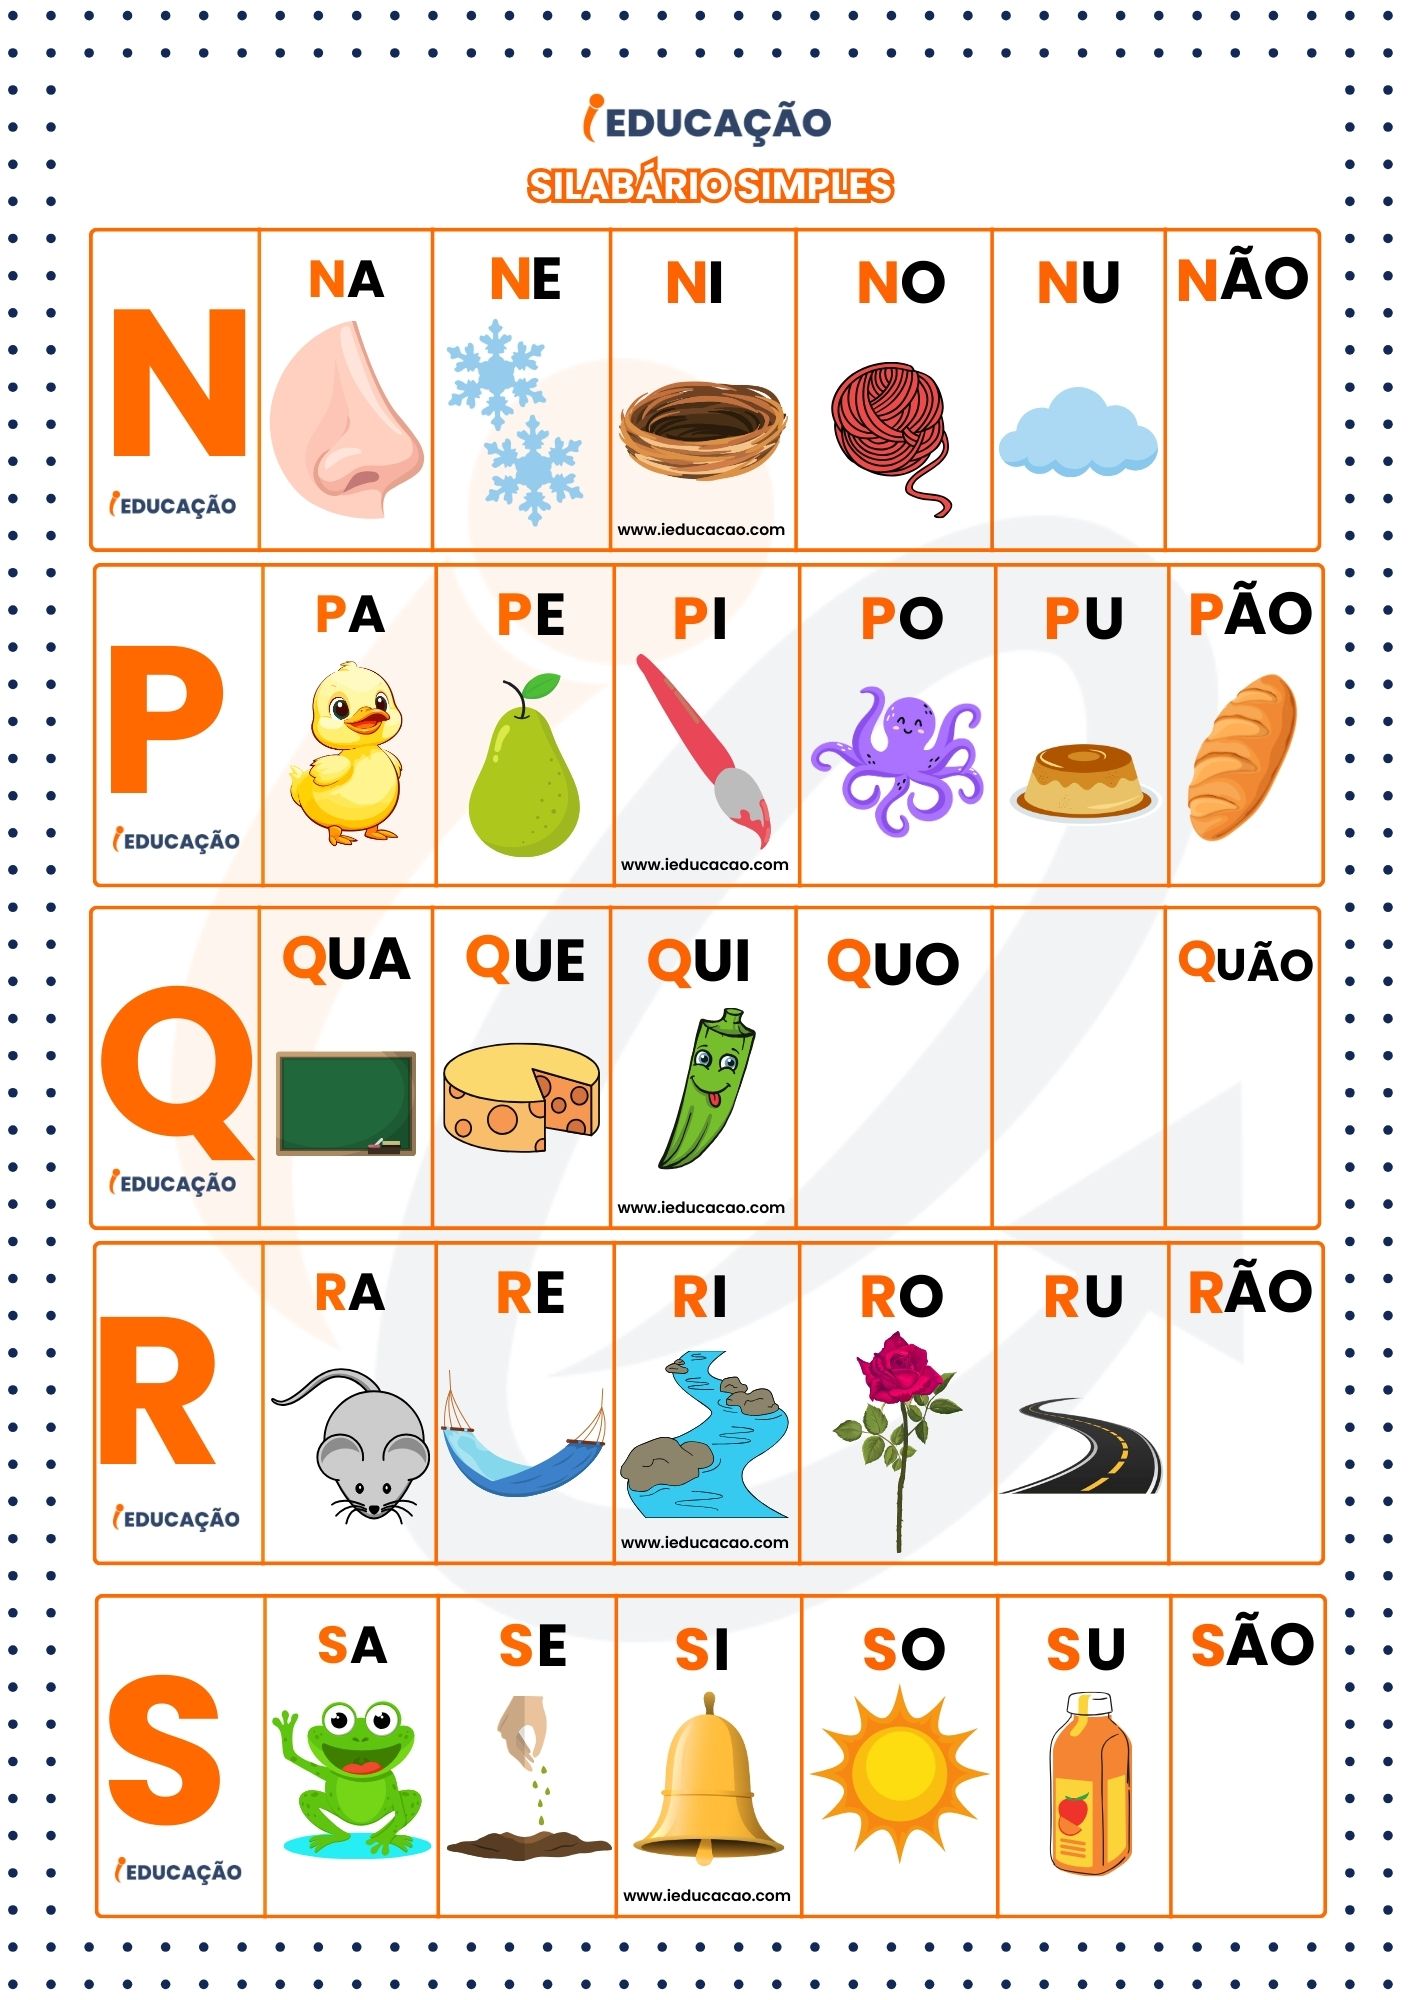 Silabário Simples com figuras representativas com letras n a s- Silabário Simples ilustrativo